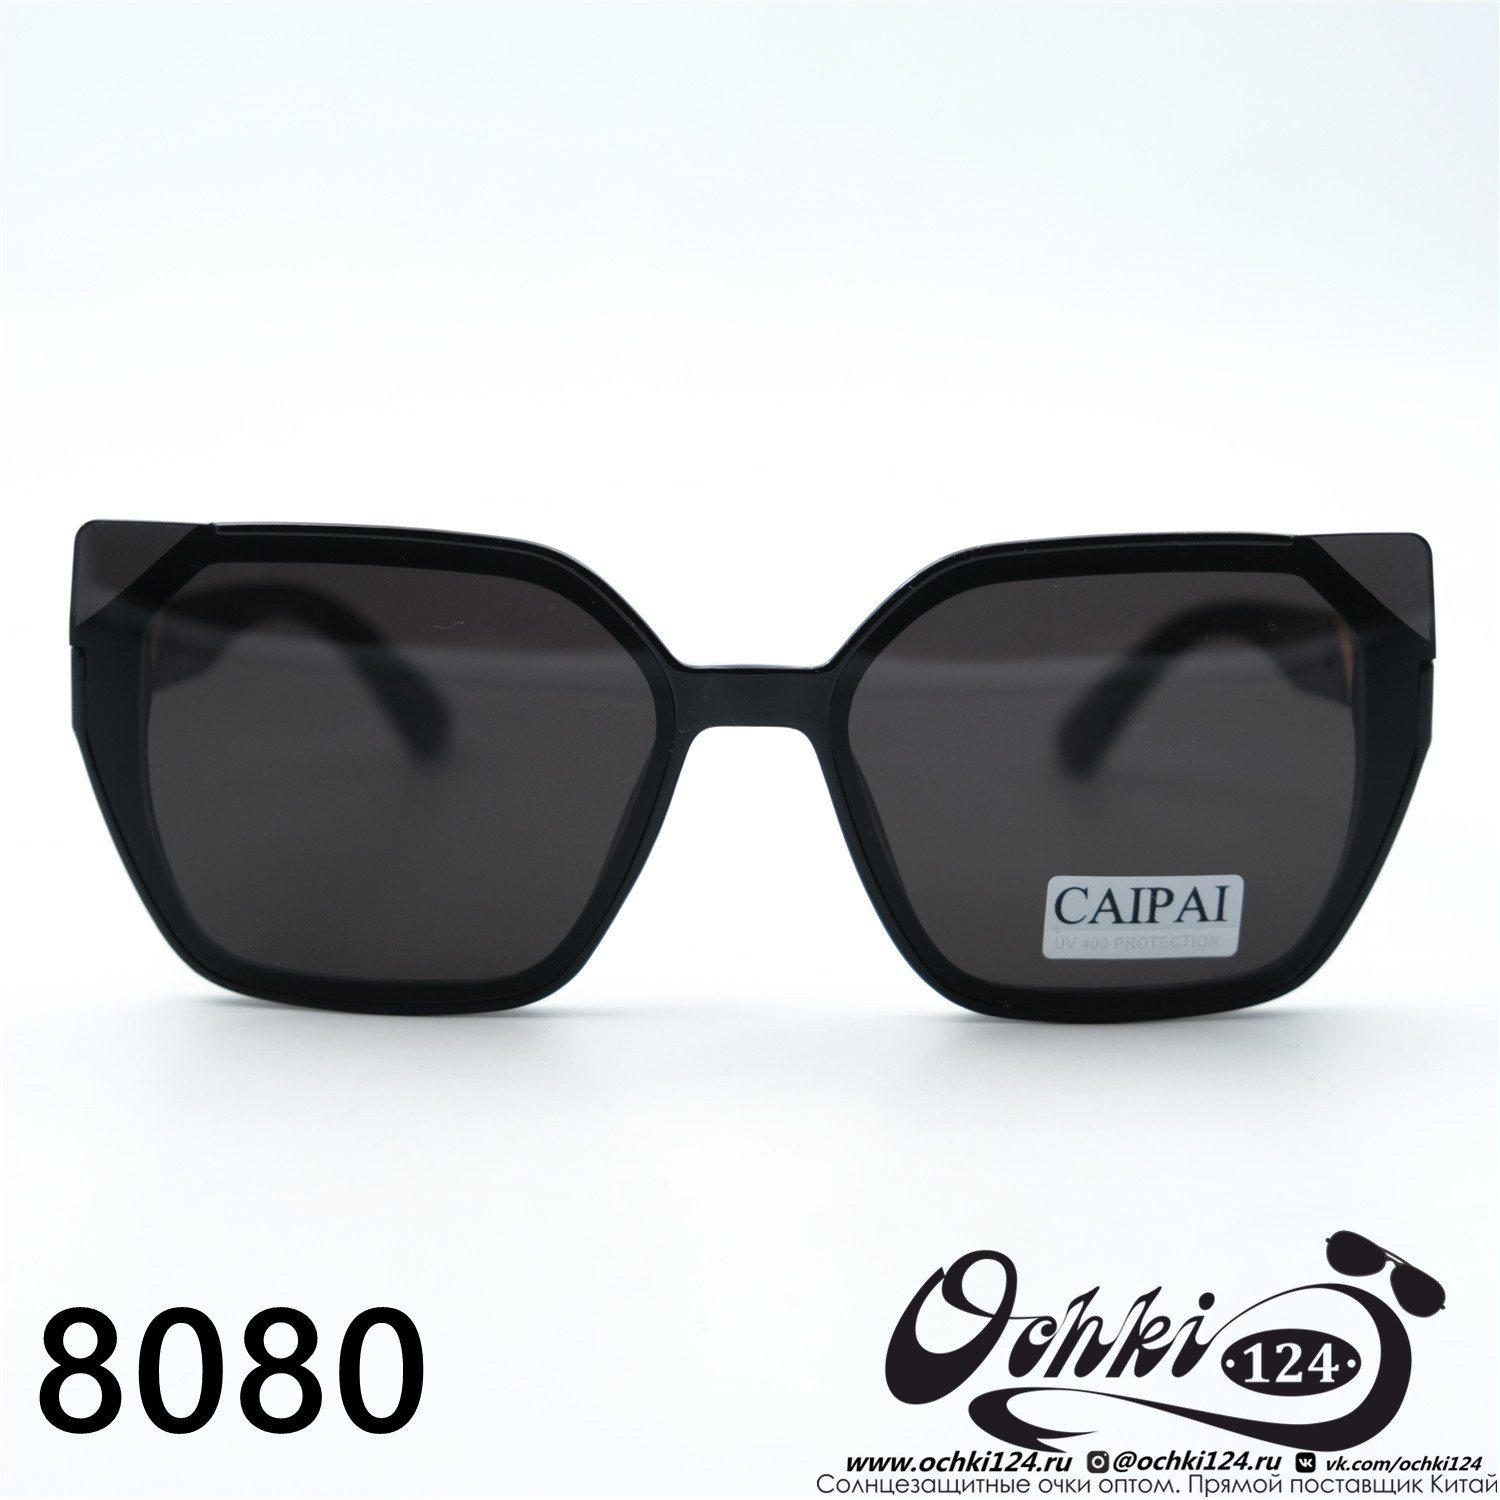  Солнцезащитные очки картинка 2023 Женские Геометрические формы Caipai 8080-C1 